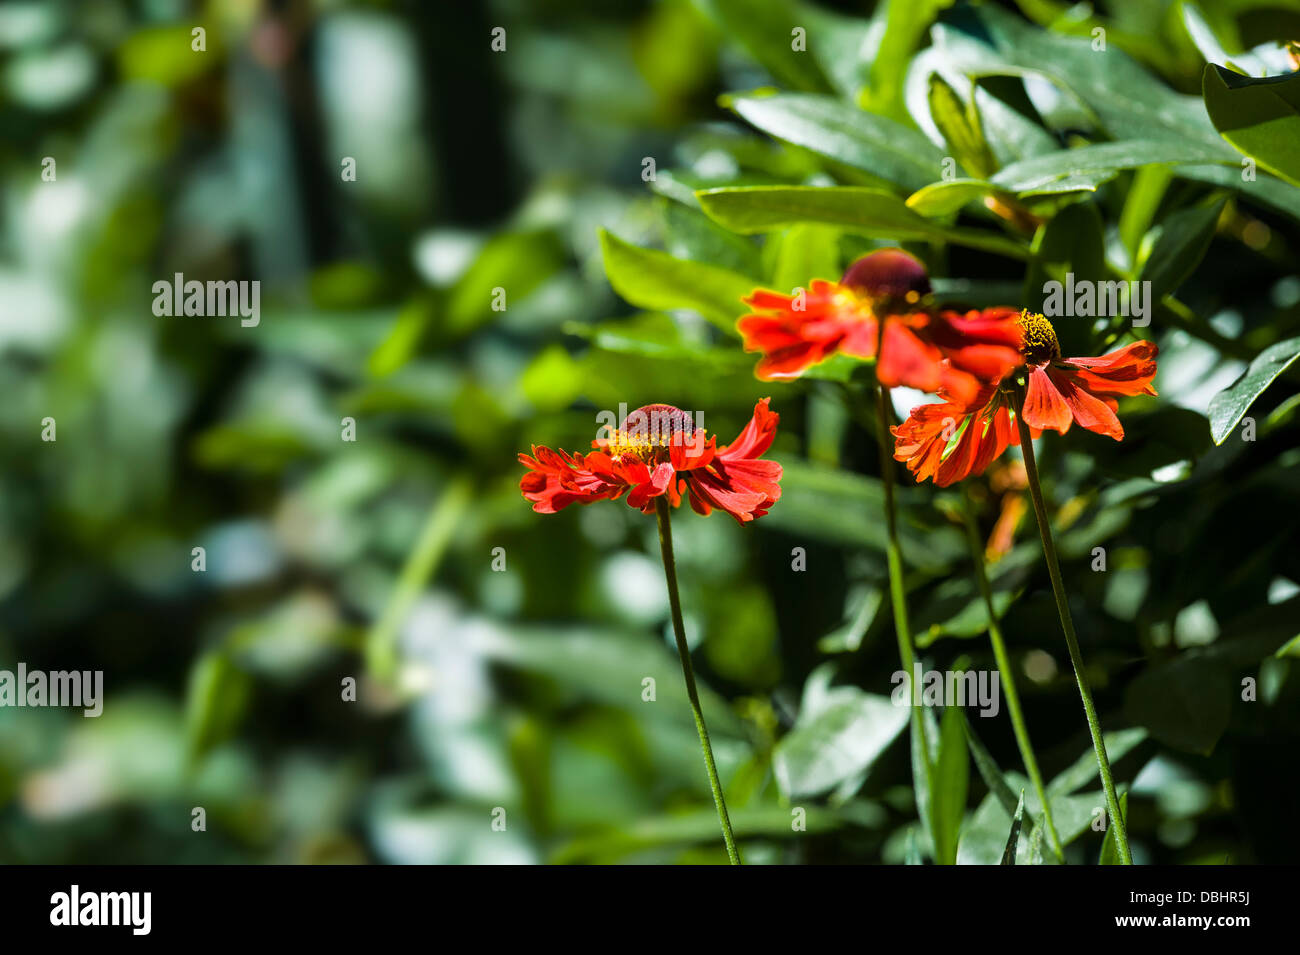 helenium moerheim beauty, helens flower. Stock Photo